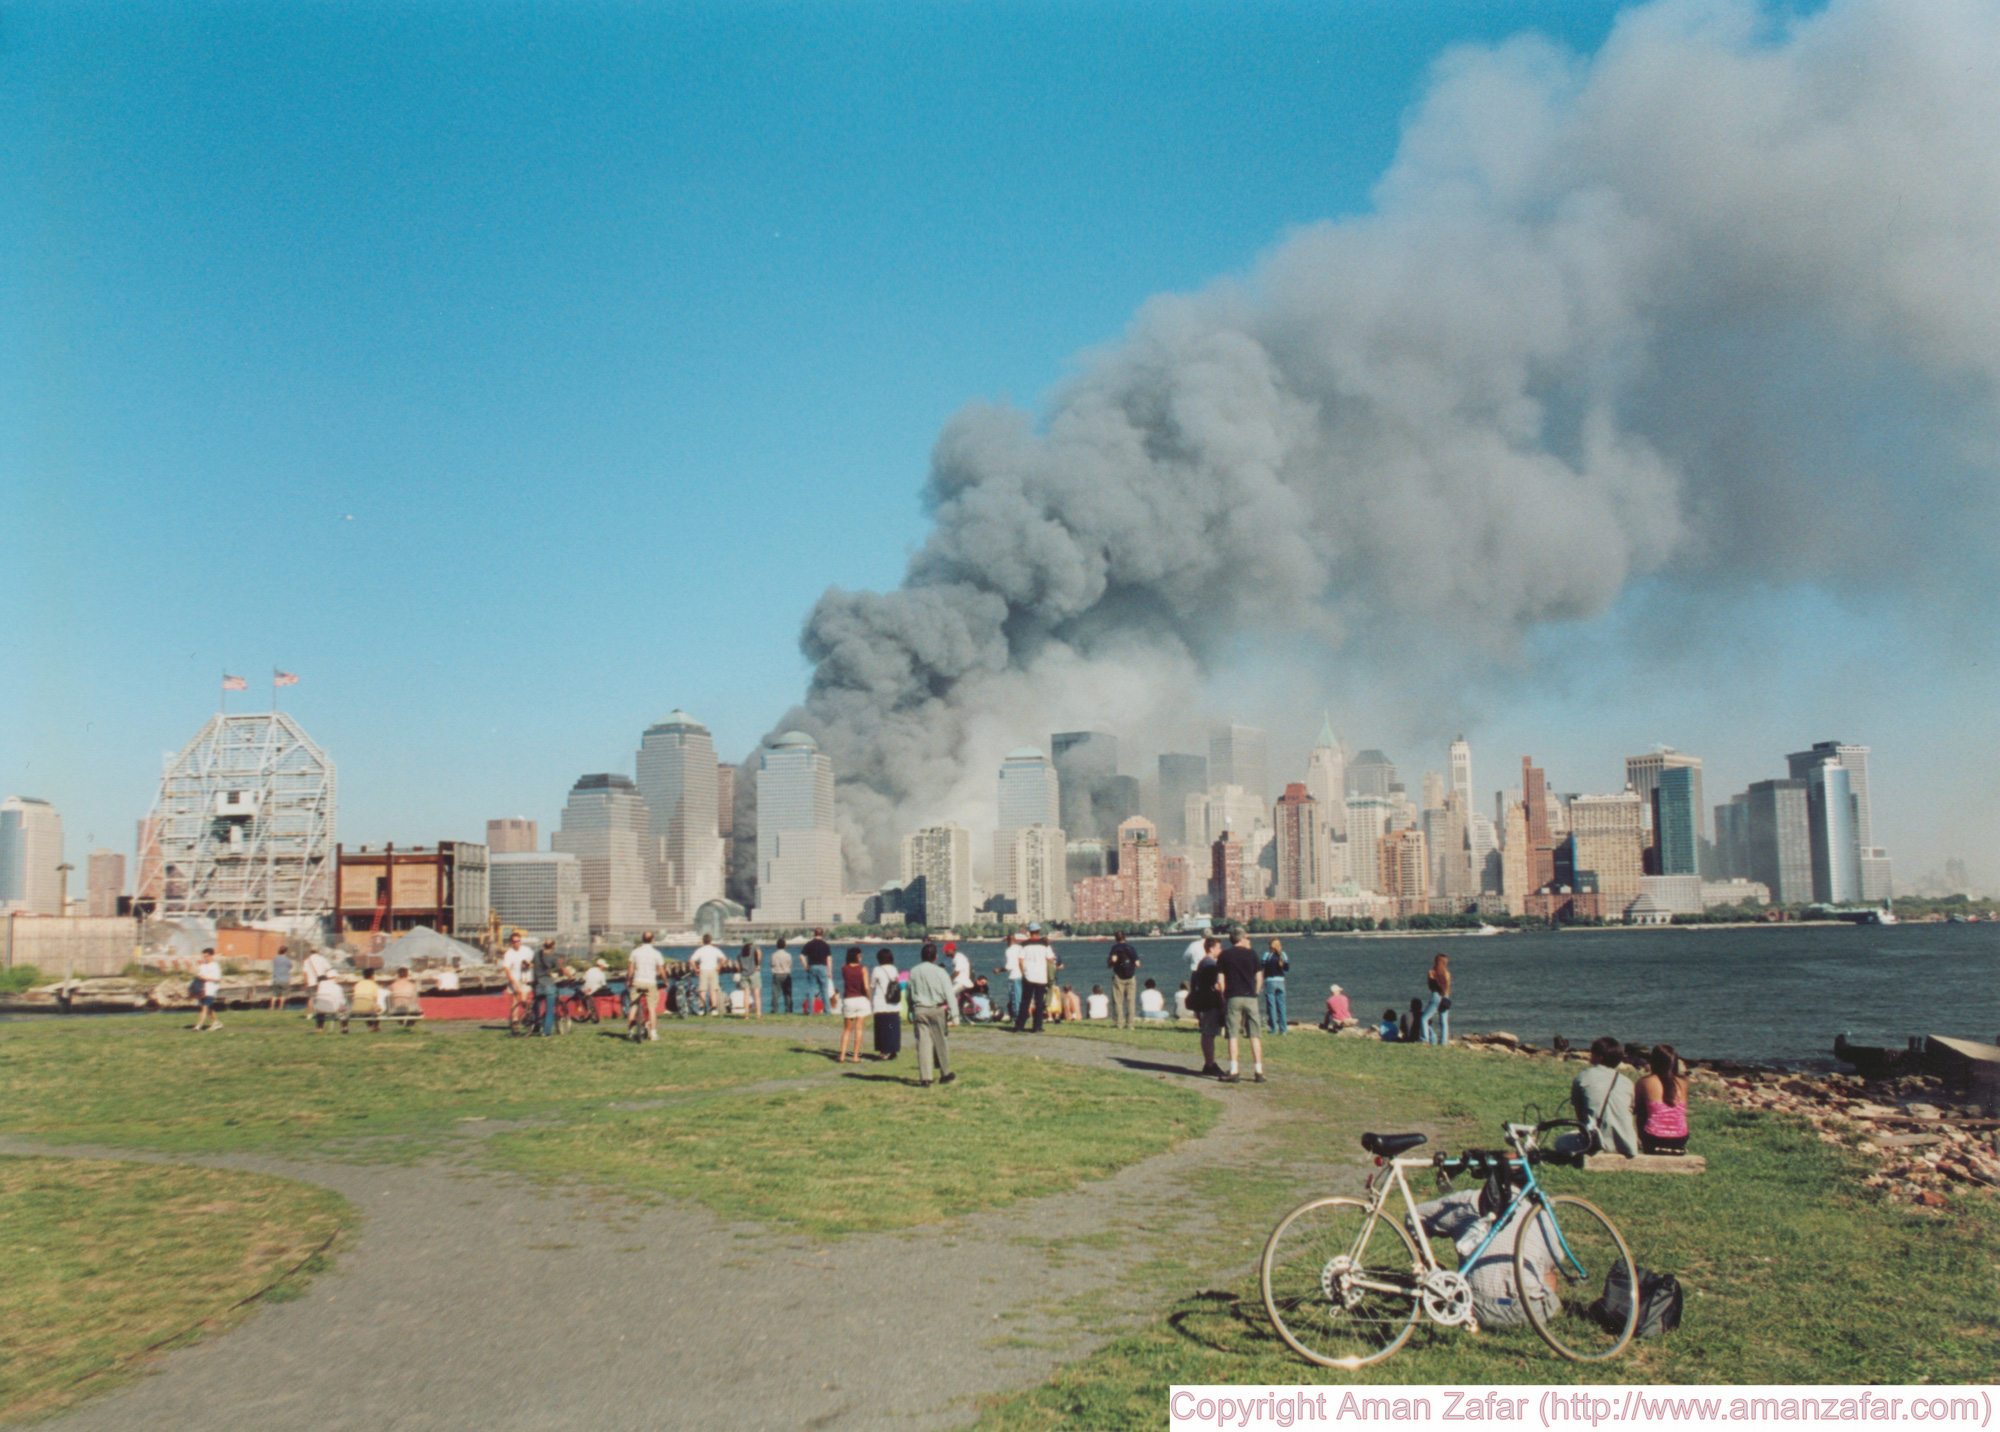 Khoảnh khắc yên bình của Trung tâm Thương mại Thế giới trước vụ khủng bố 11/9 nằm lại trong ký ức của người Mỹ - Ảnh 27.